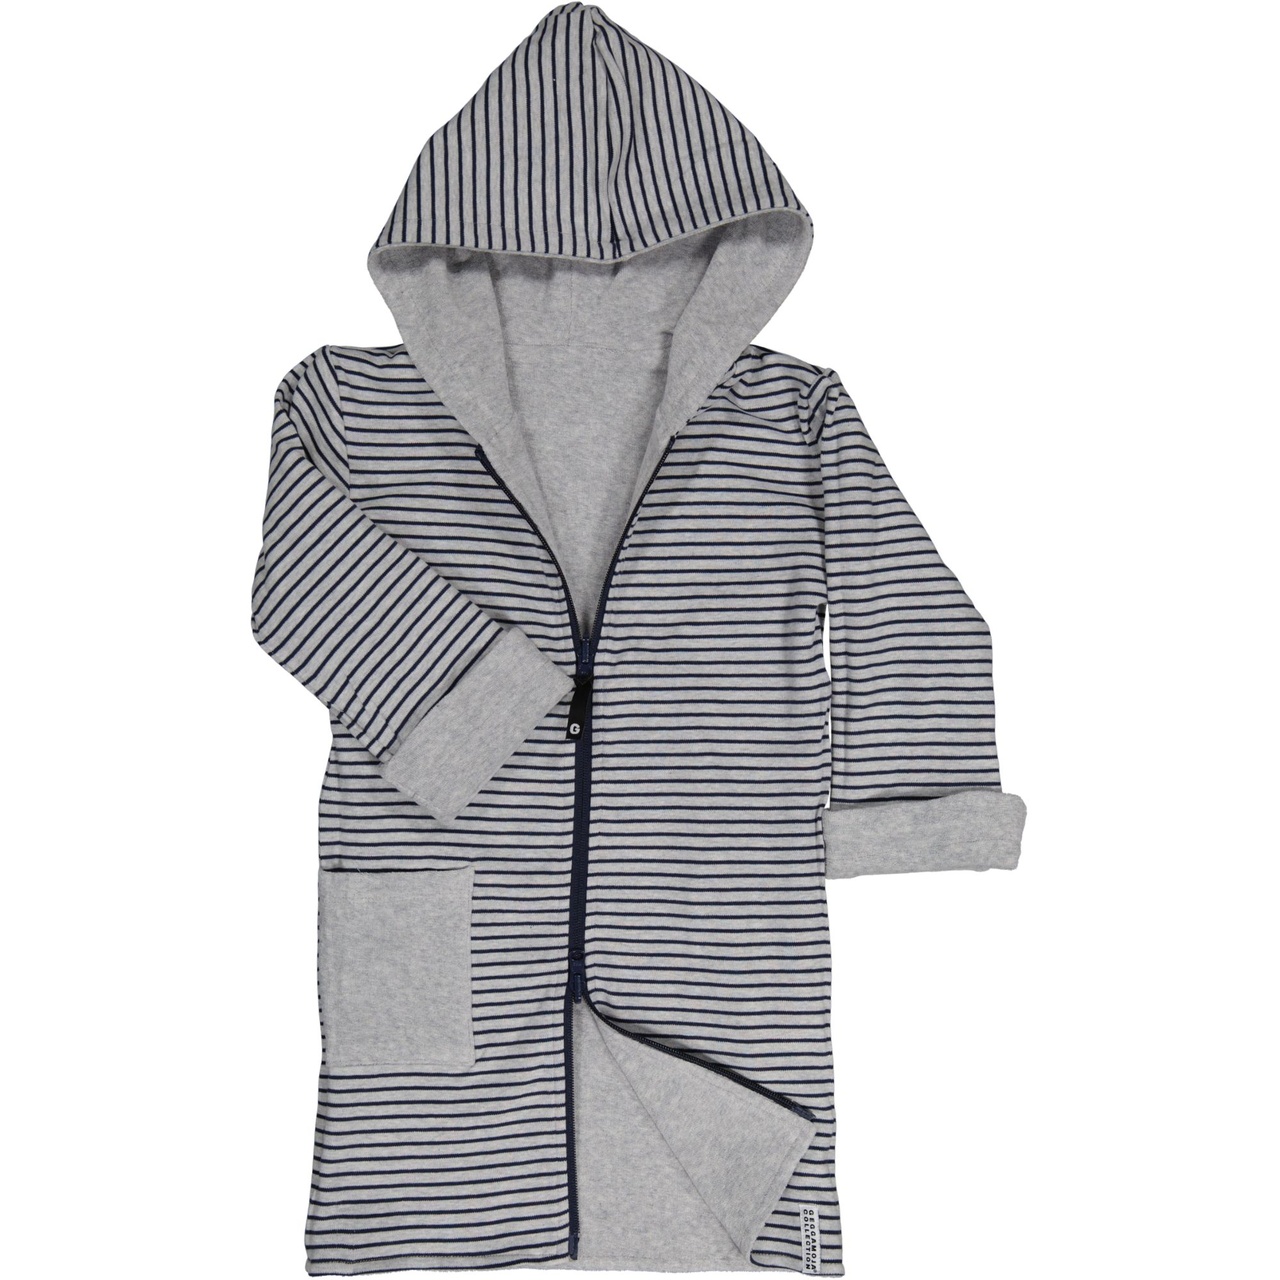 Kids bathrobe Greymel/grey-blue 134/140